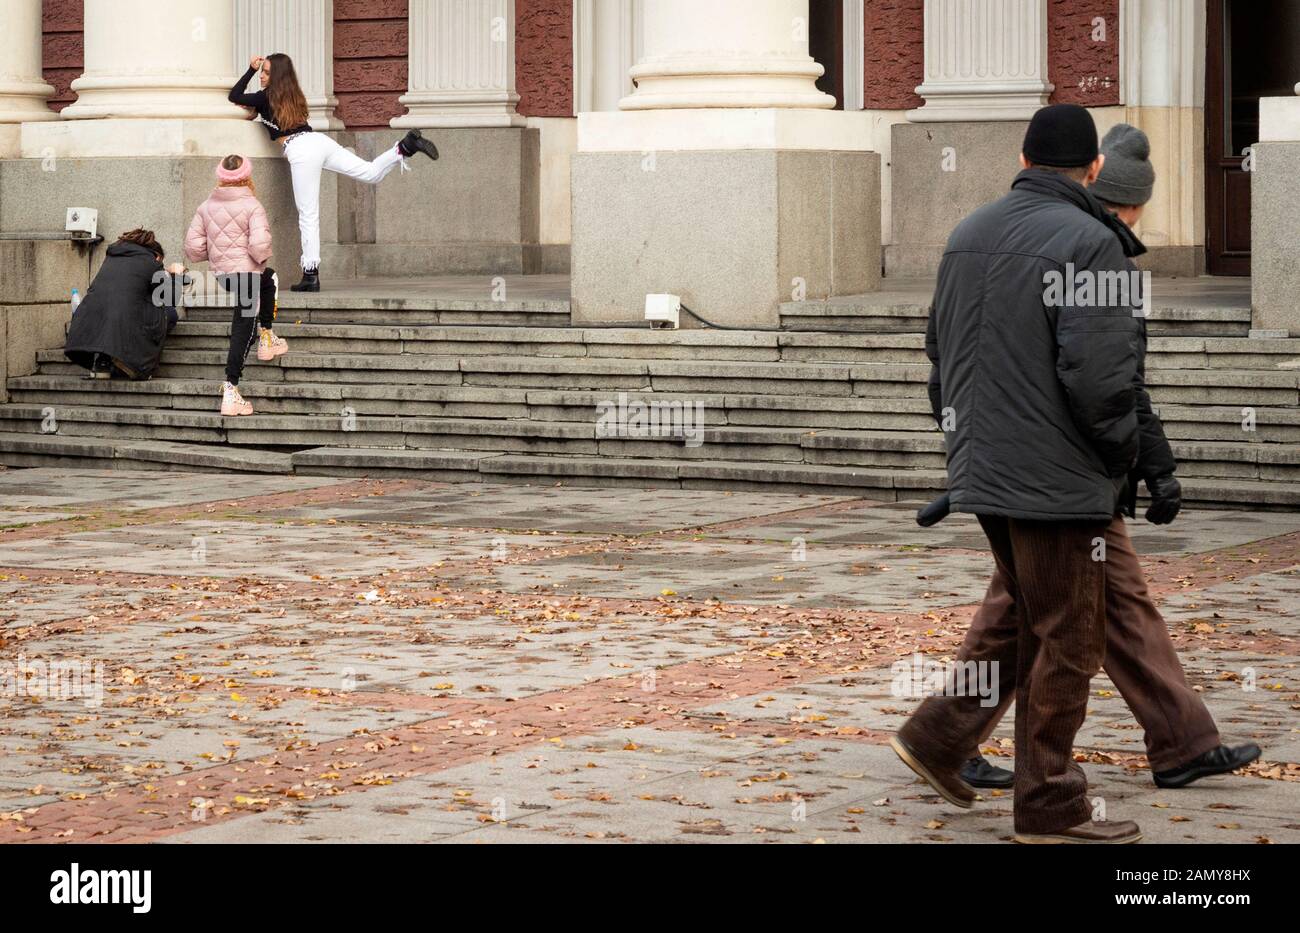 L'écart de génération se présente comme deux passants en regardant un groupe d'adolescents poser et prendre des photos à Sofia, Bulgarie, Europe de l'est, Balkans, UE Banque D'Images